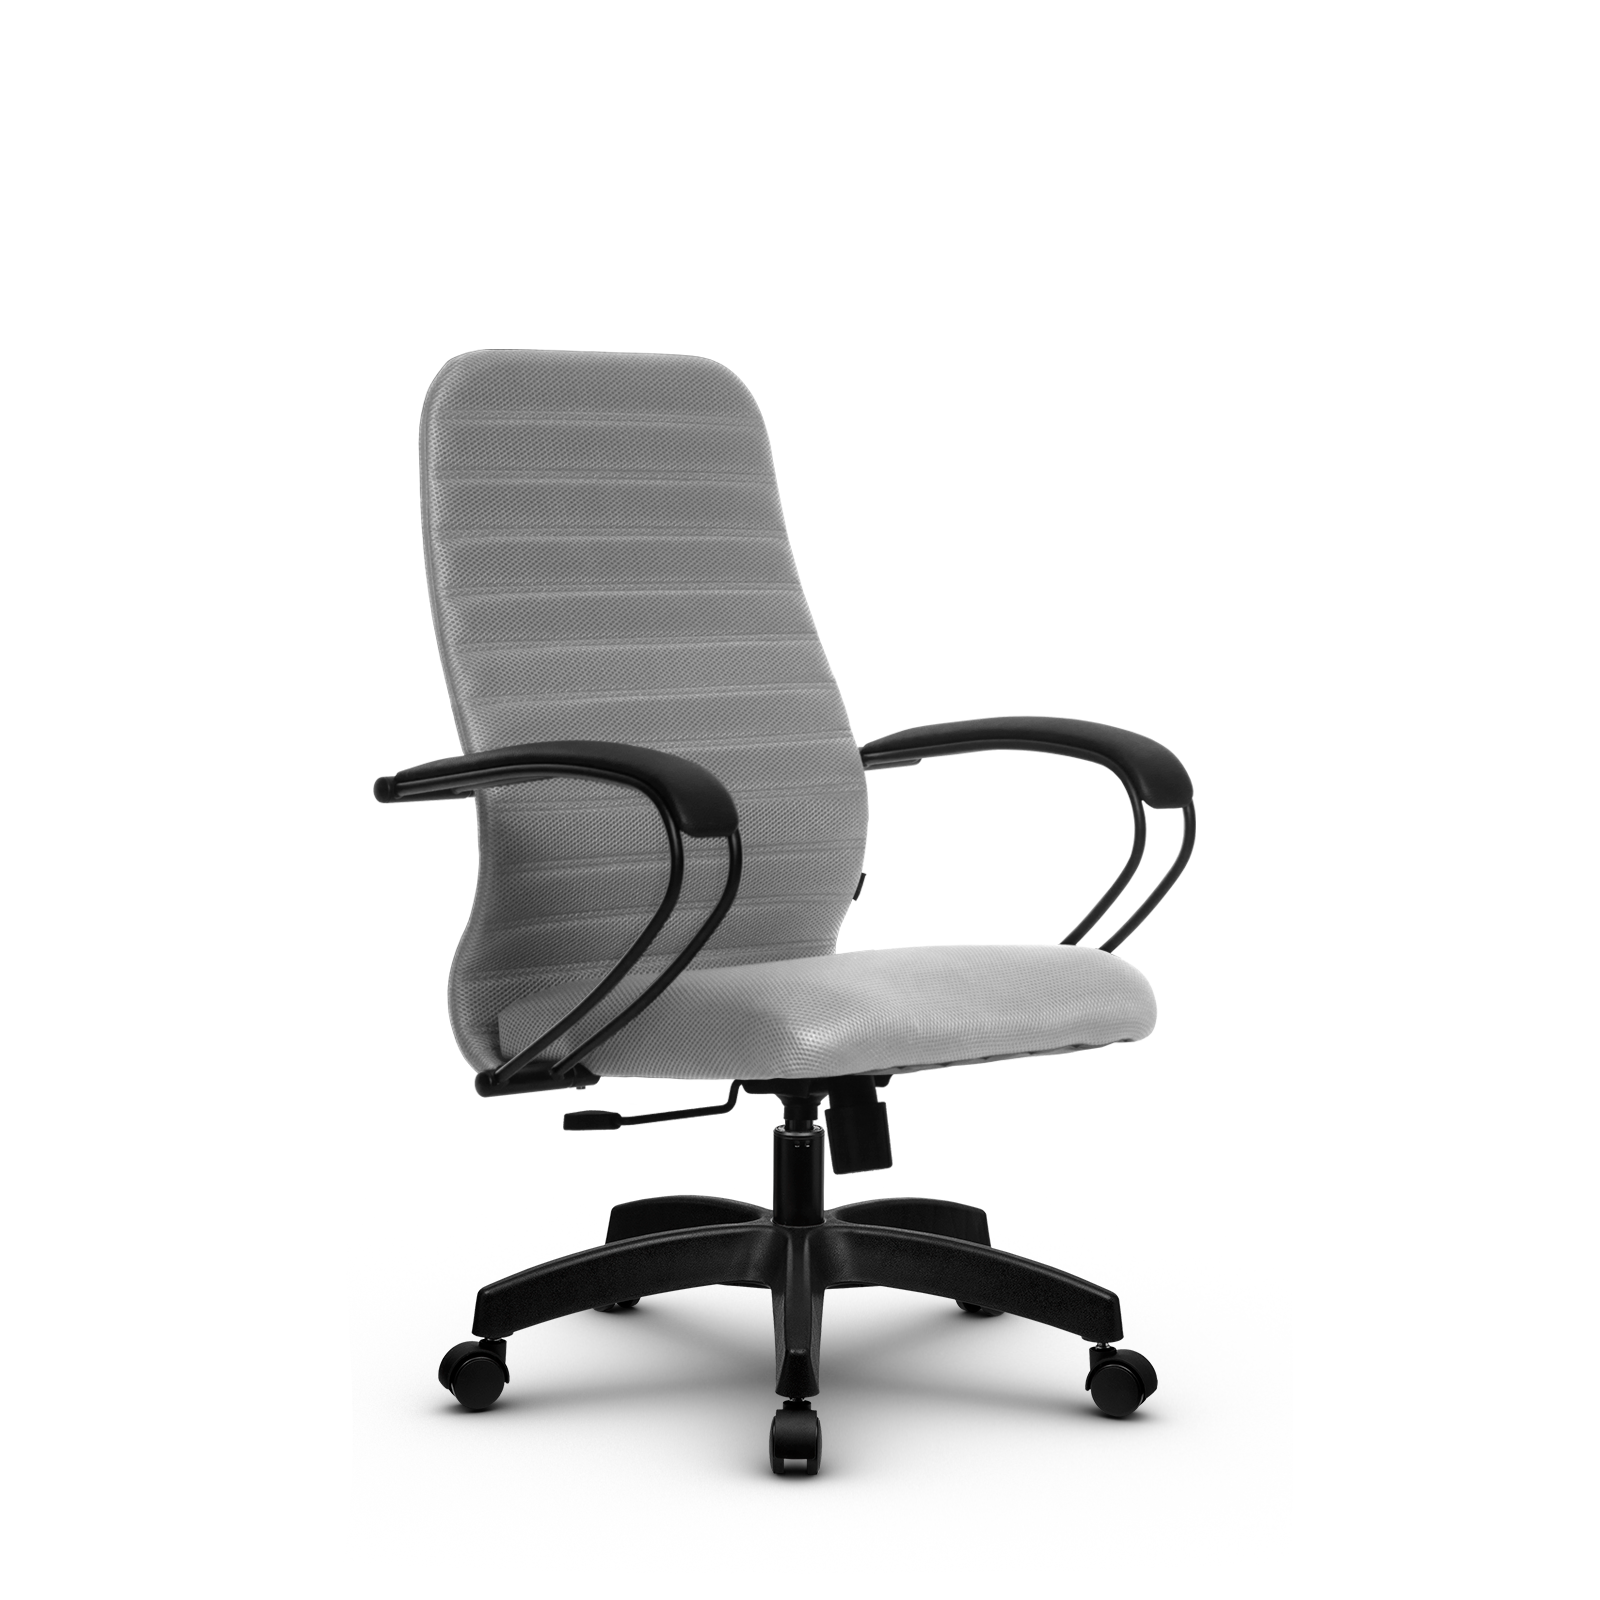 90488591 Офисное кресло Su z312463460 прочный сетчатый материал цвет светло-серый STLM-0248473 МЕТТА